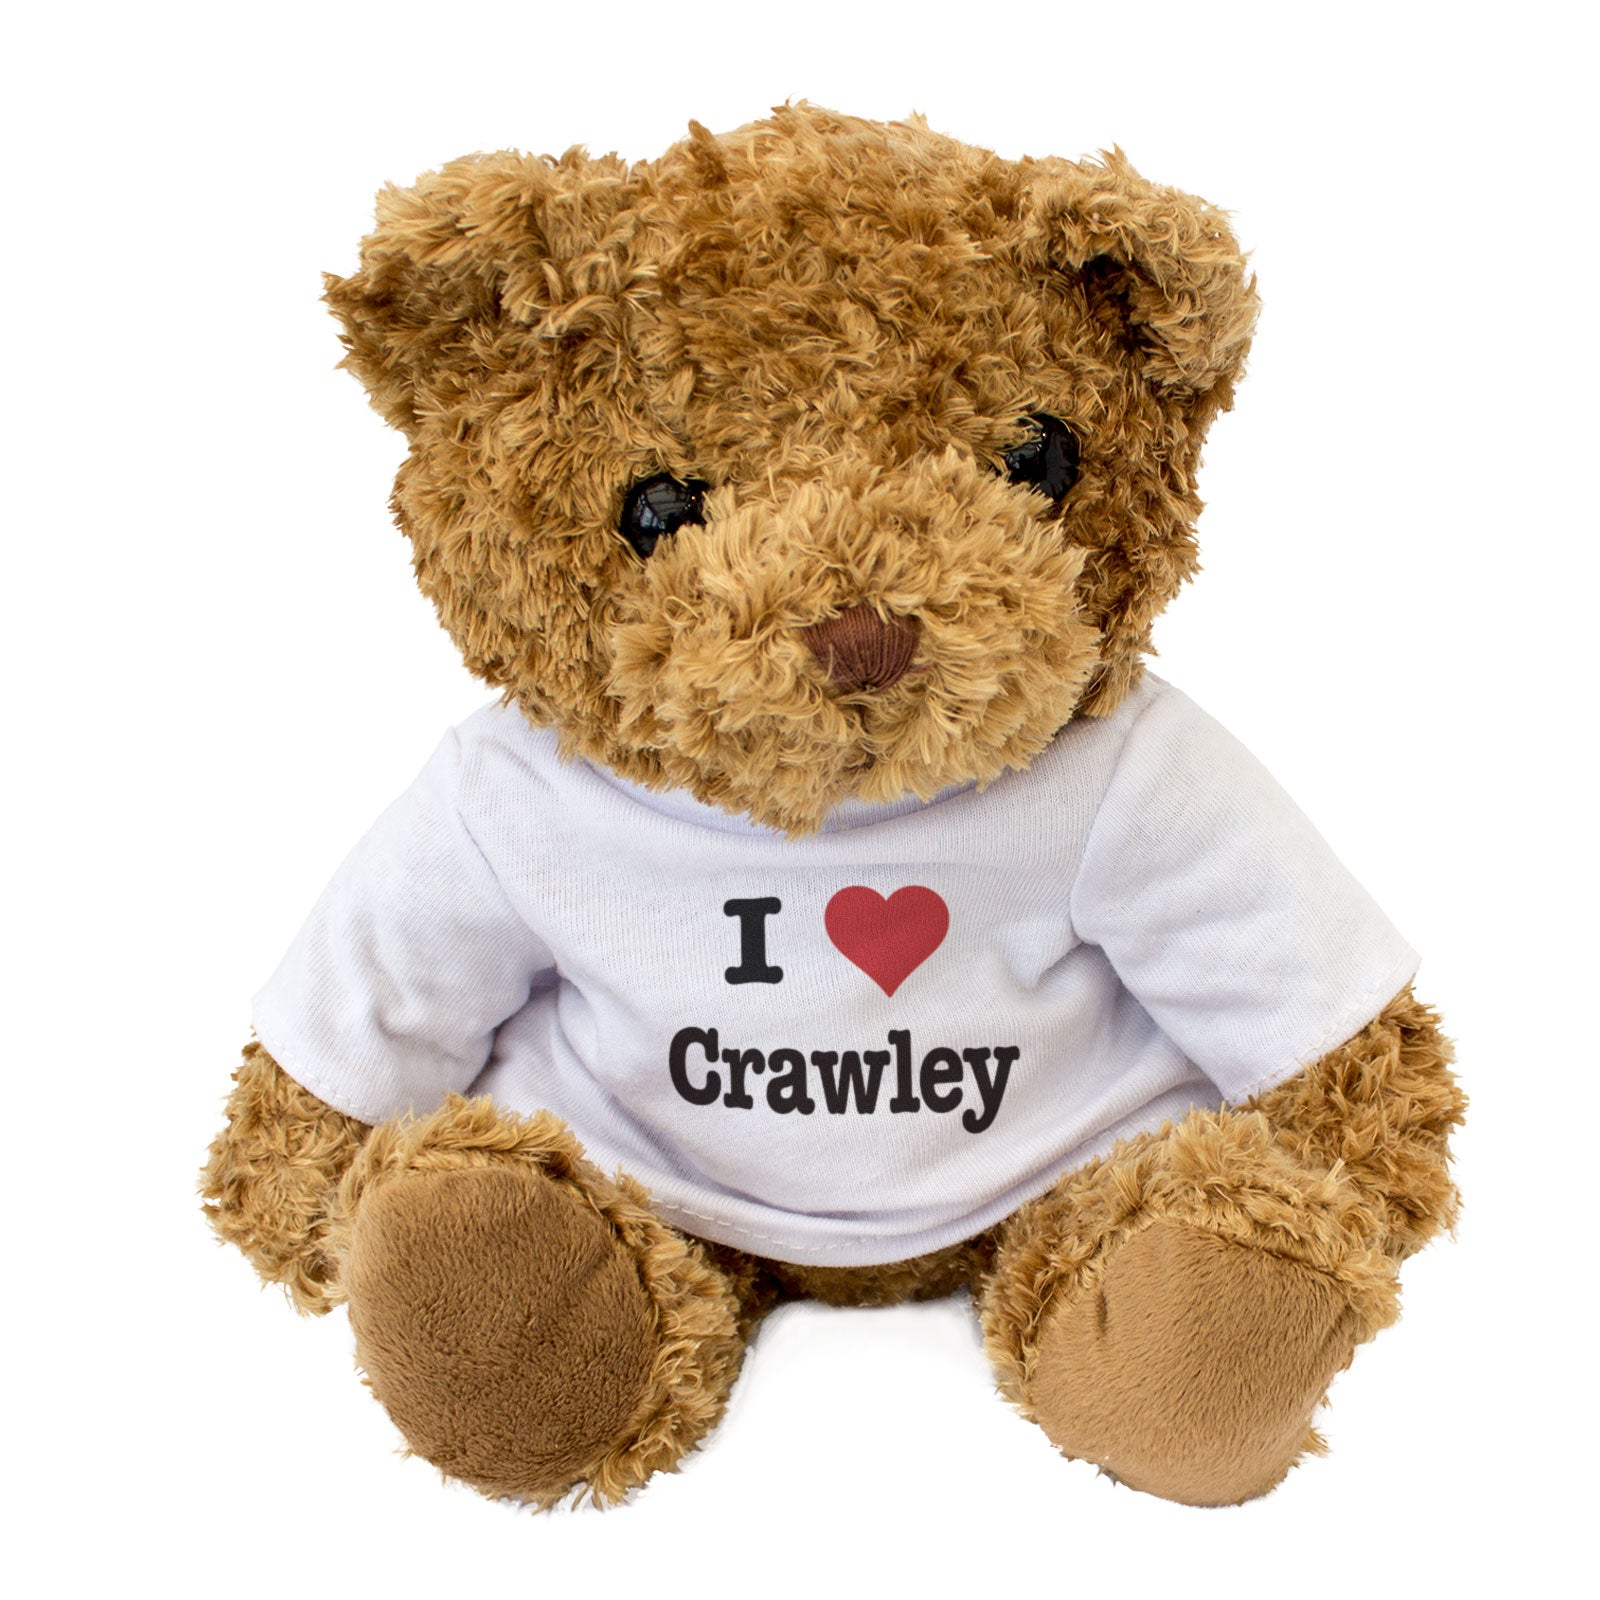 I Love Crawley - Teddy Bear